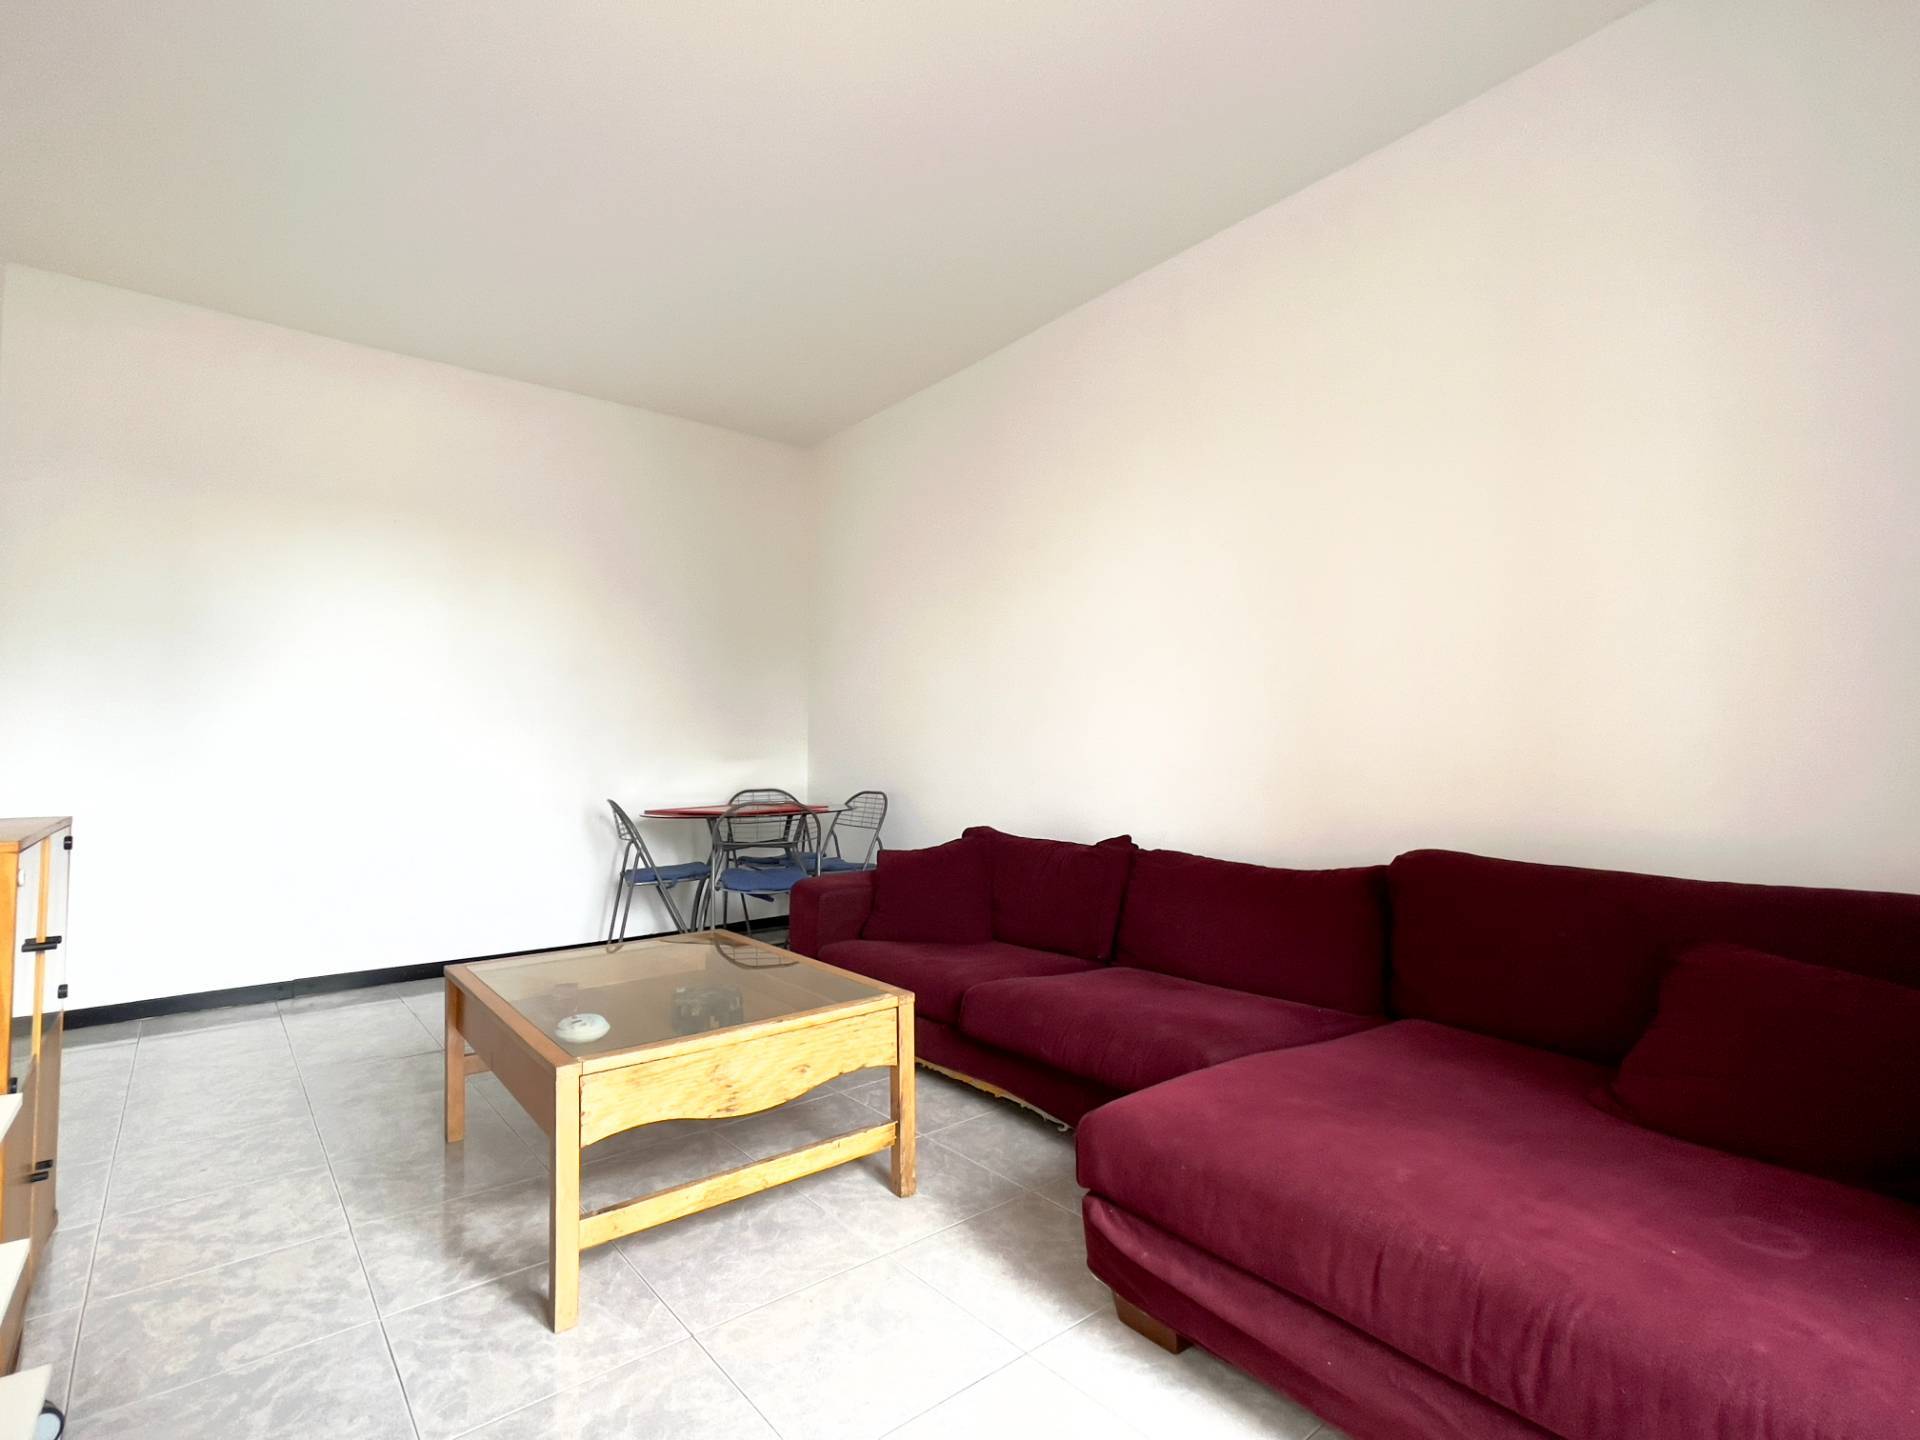 Appartamento in vendita a Cinisello Balsamo, 2 locali, zona etta, prezzo € 125.000 | PortaleAgenzieImmobiliari.it